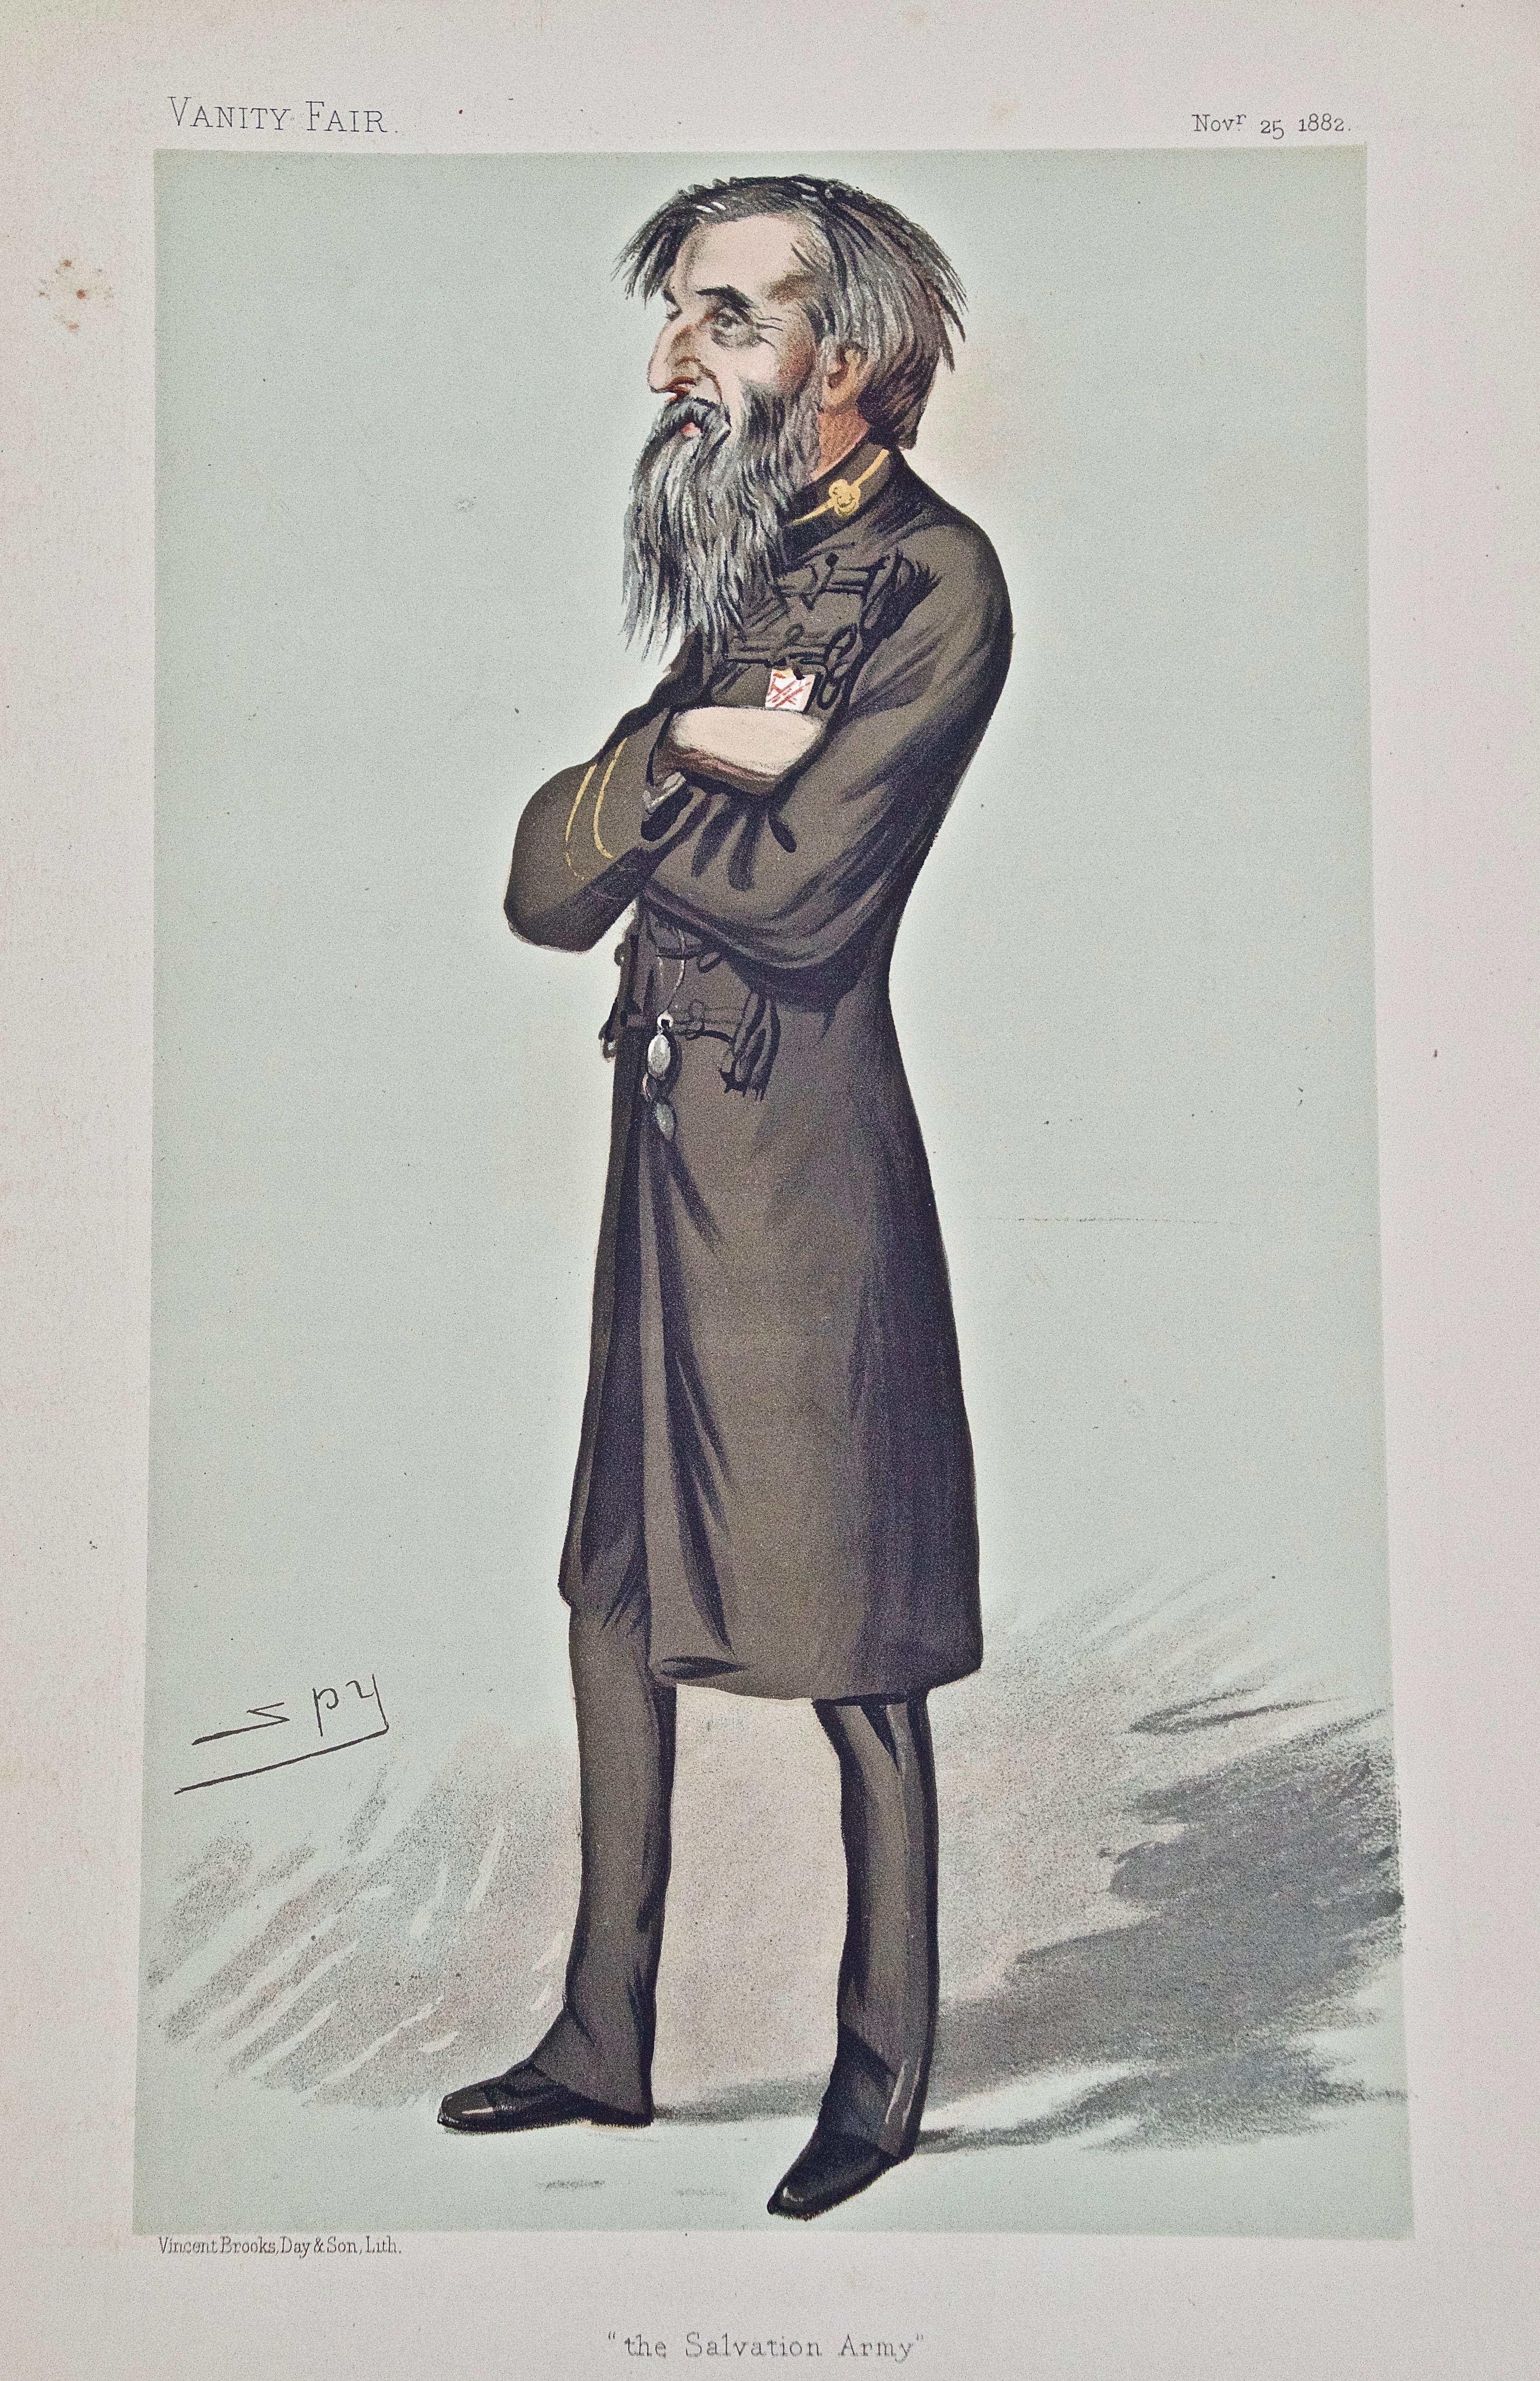 William Booth, Gründer von „The Salvation Army“: Eine Schnitzerei aus der Vanity Fair des 19. Jahrhunderts – Print von Sir Leslie Ward